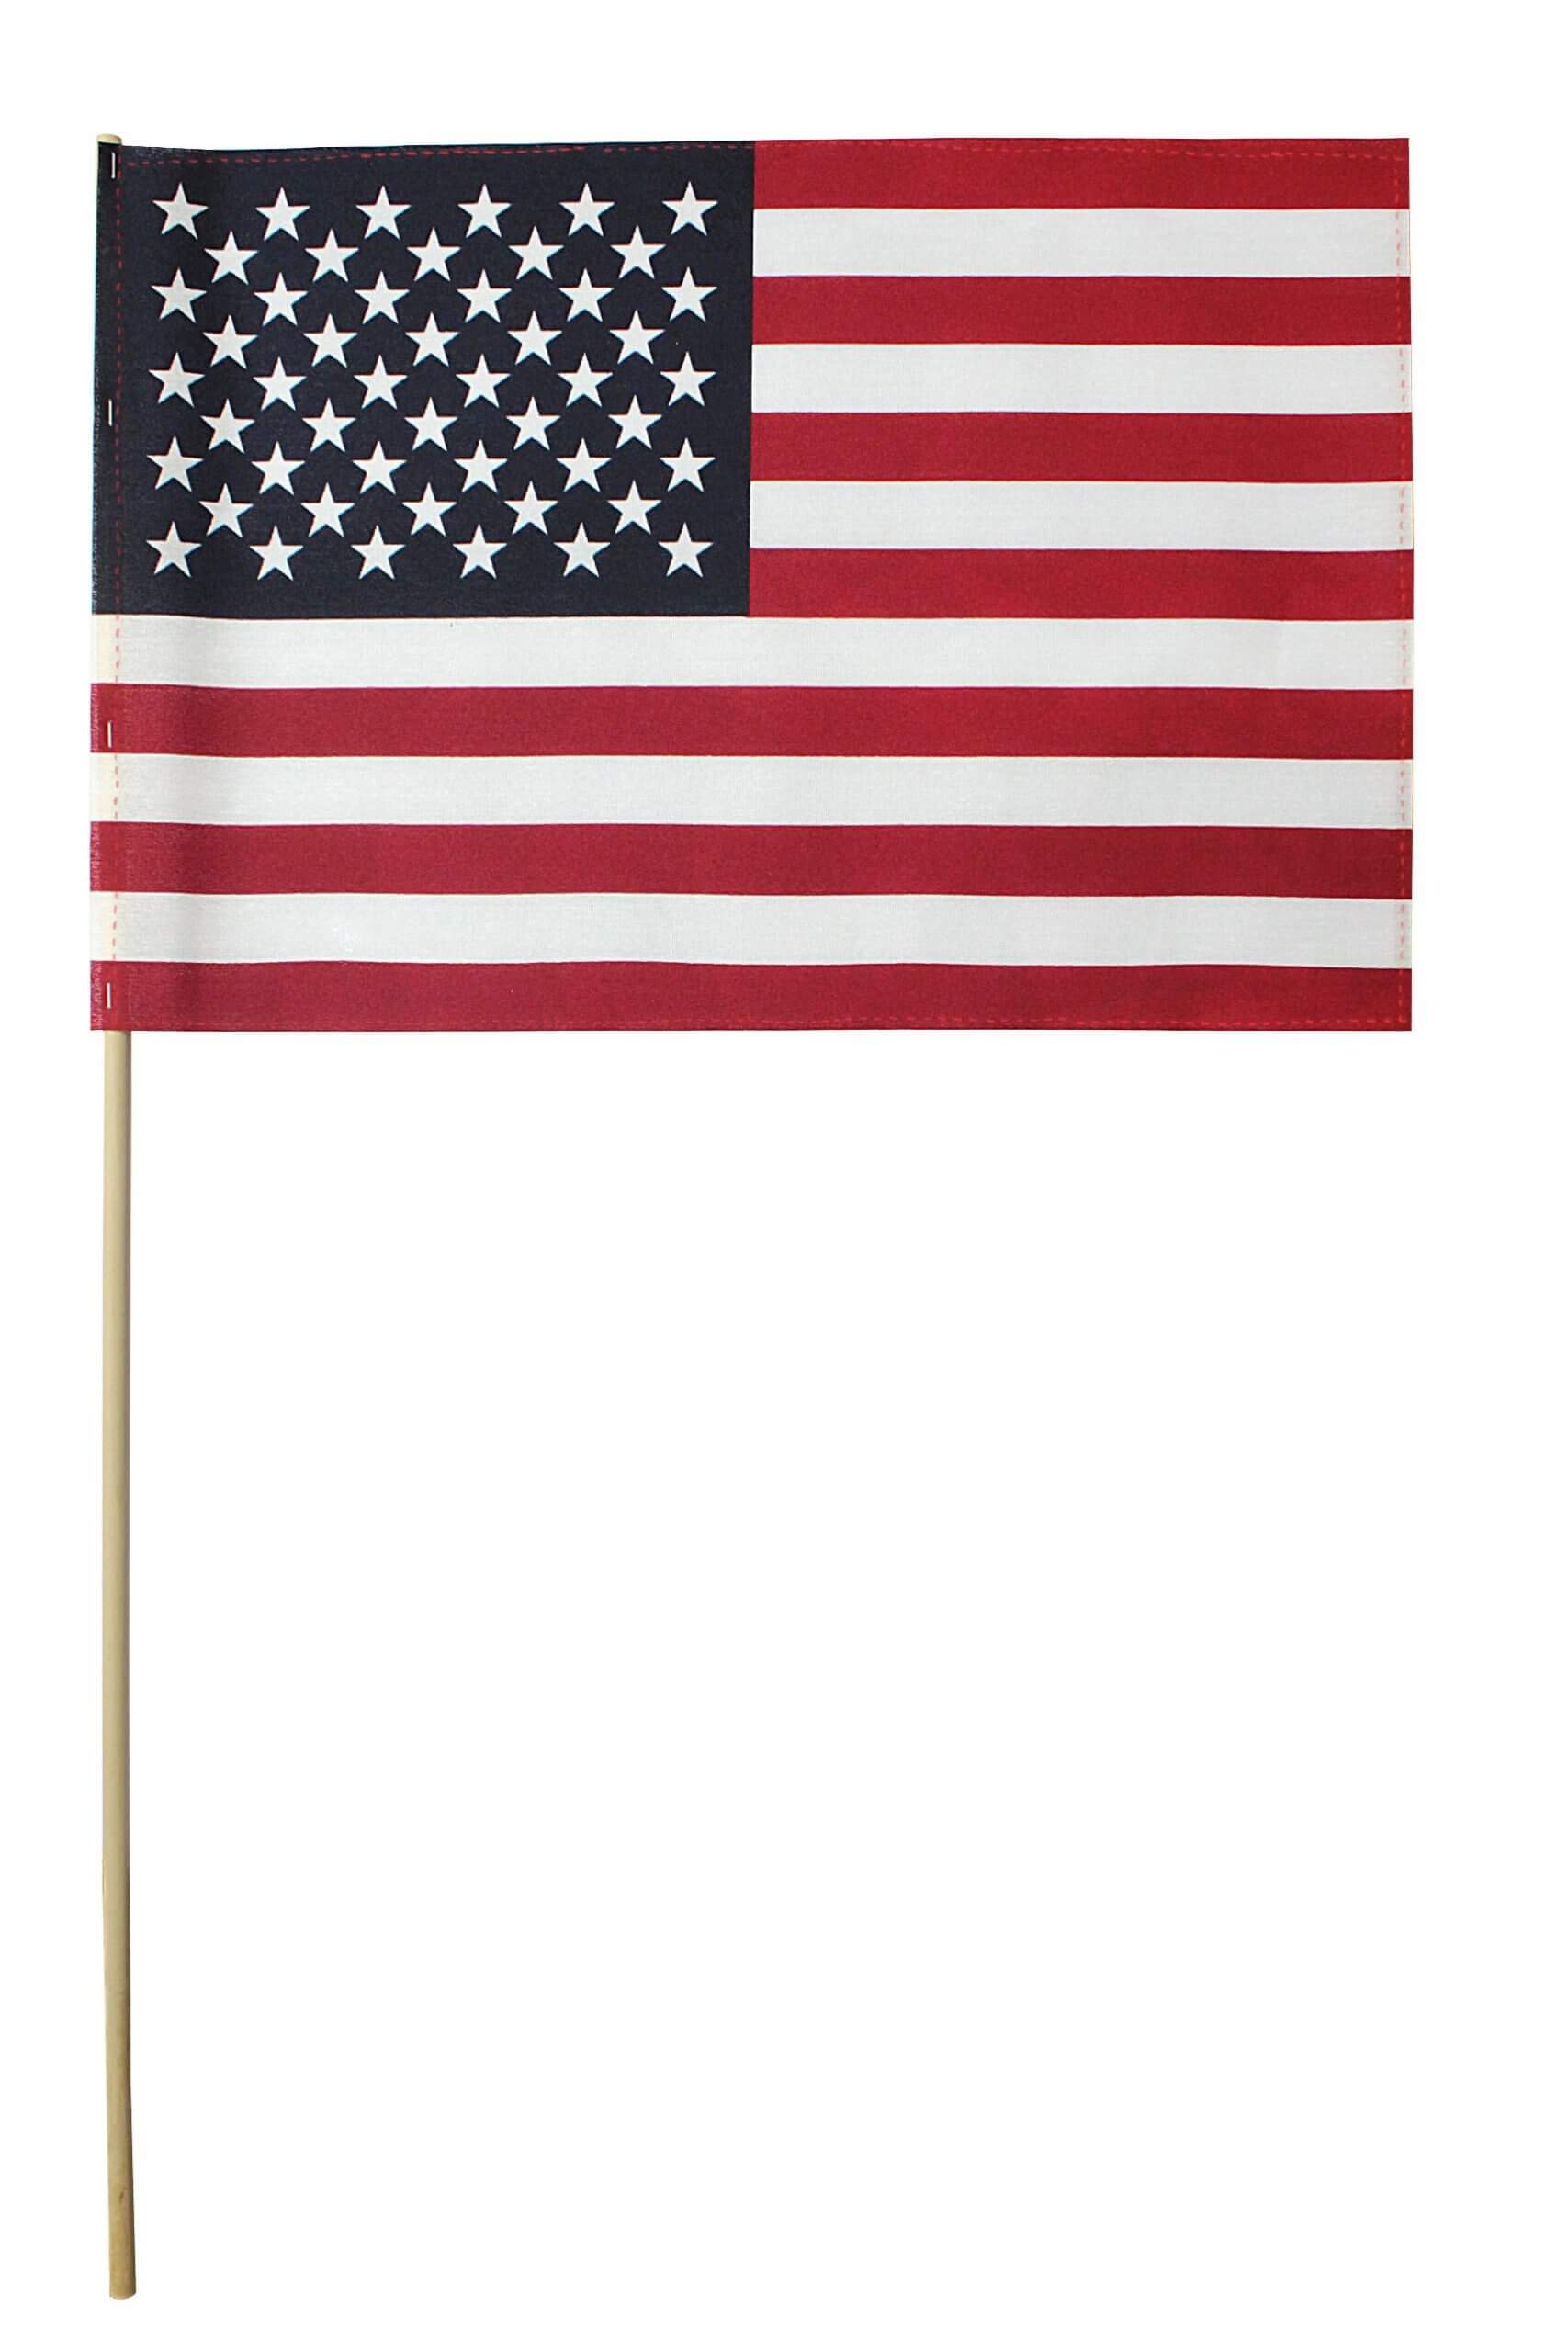 Bandera de cementerio estadounidense a granel de 12.0 x 18.0 in – Bandera de veterano estadounidense con dobladillo – Taco de madera de 3/8 x 30 pulgadas – Punta de lanza – Paquete de 144 banderas – Fabricado en los Estados Unidos